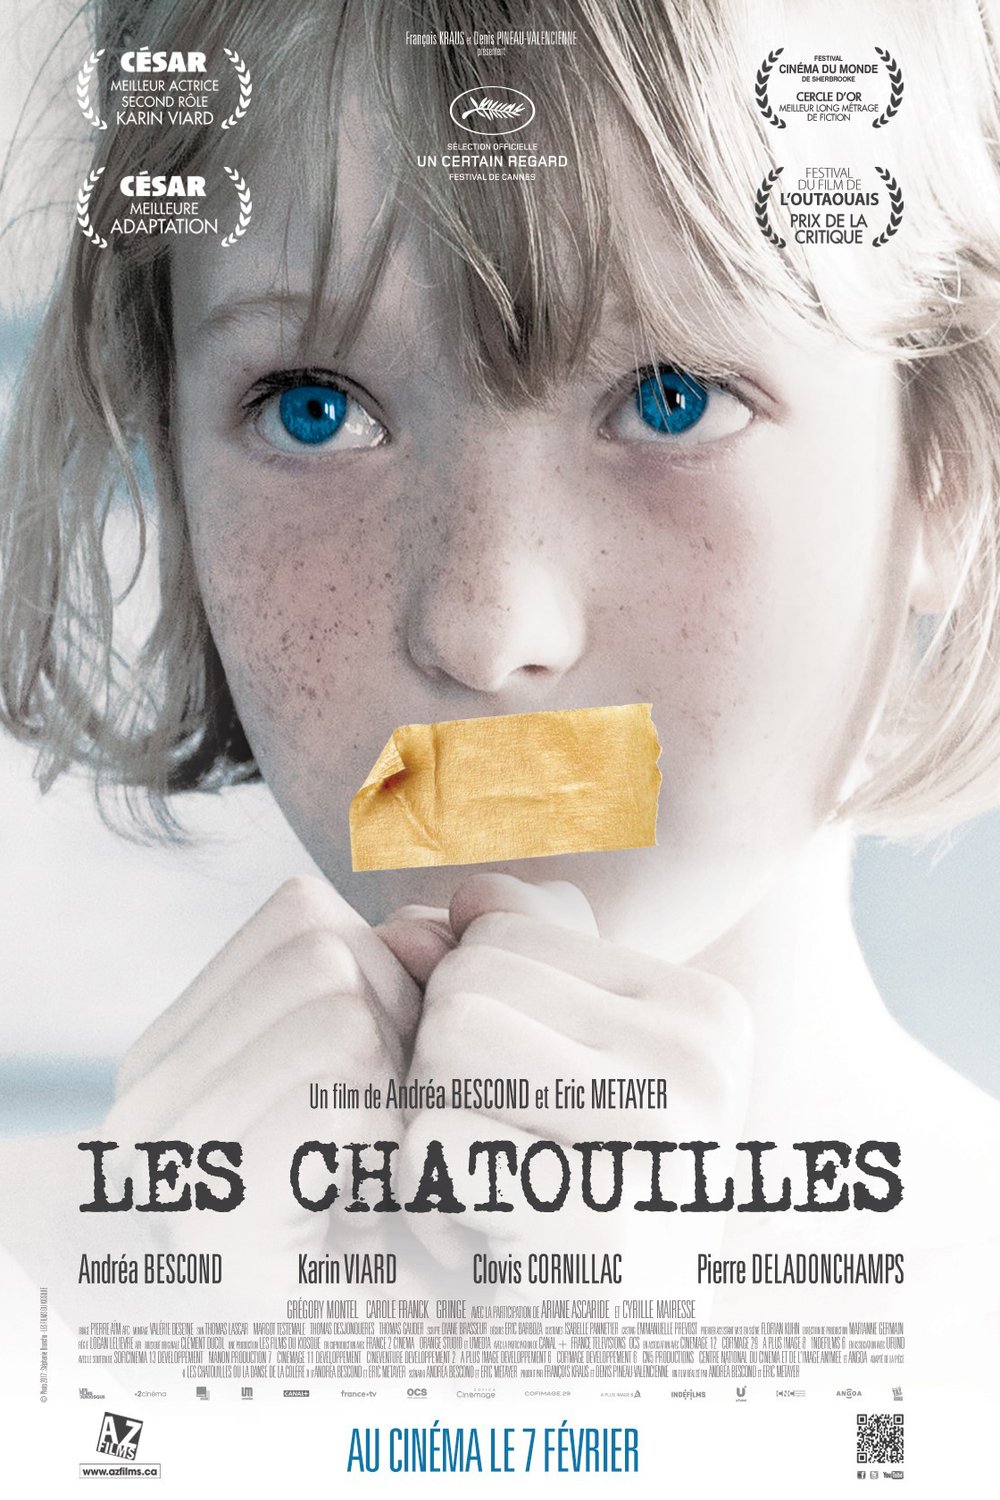 L'affiche du film Les Chatouilles